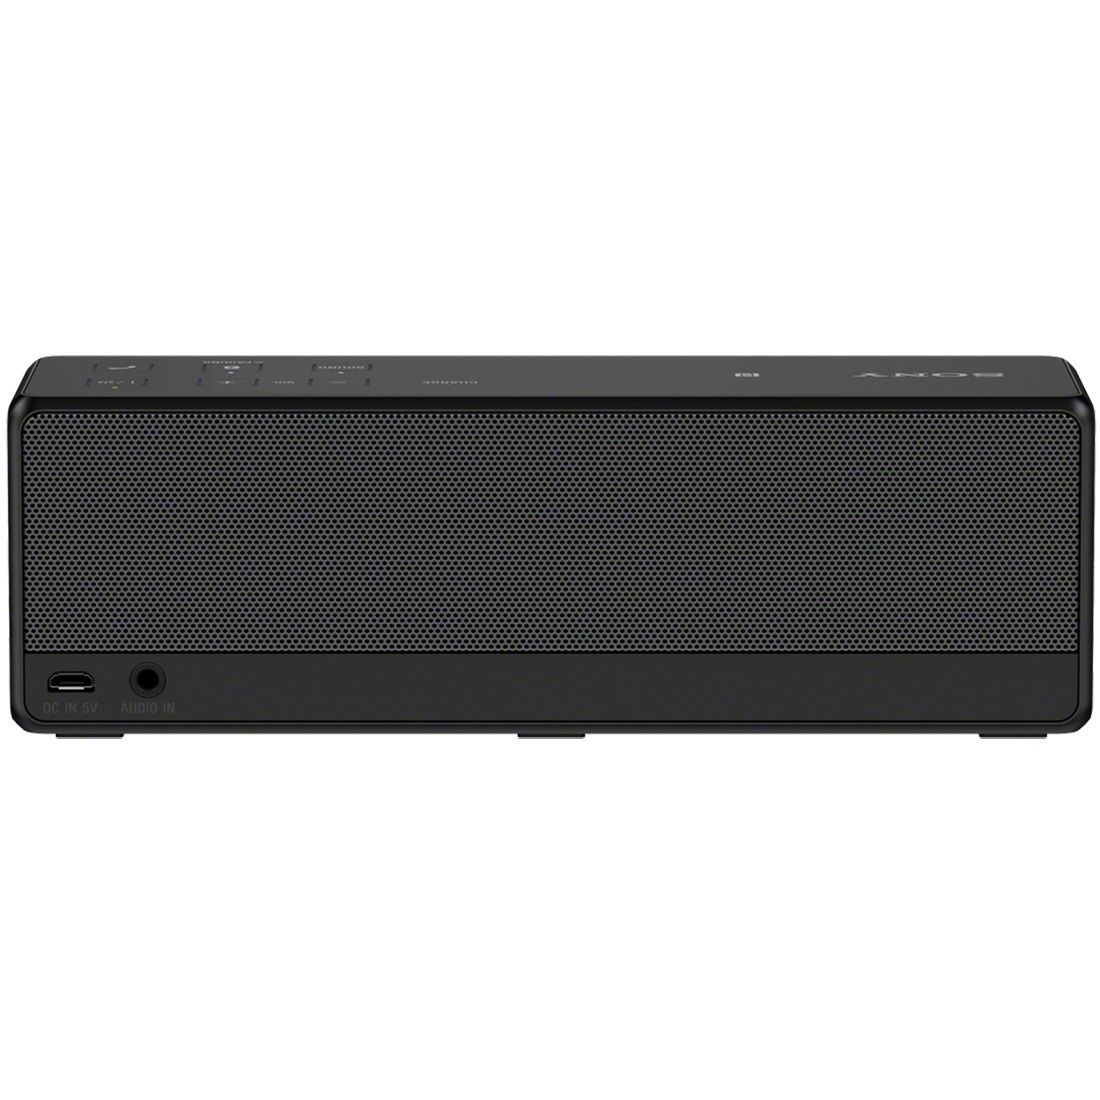  Boxa portabila Bluetooth Sony SRSX33B, Negru 